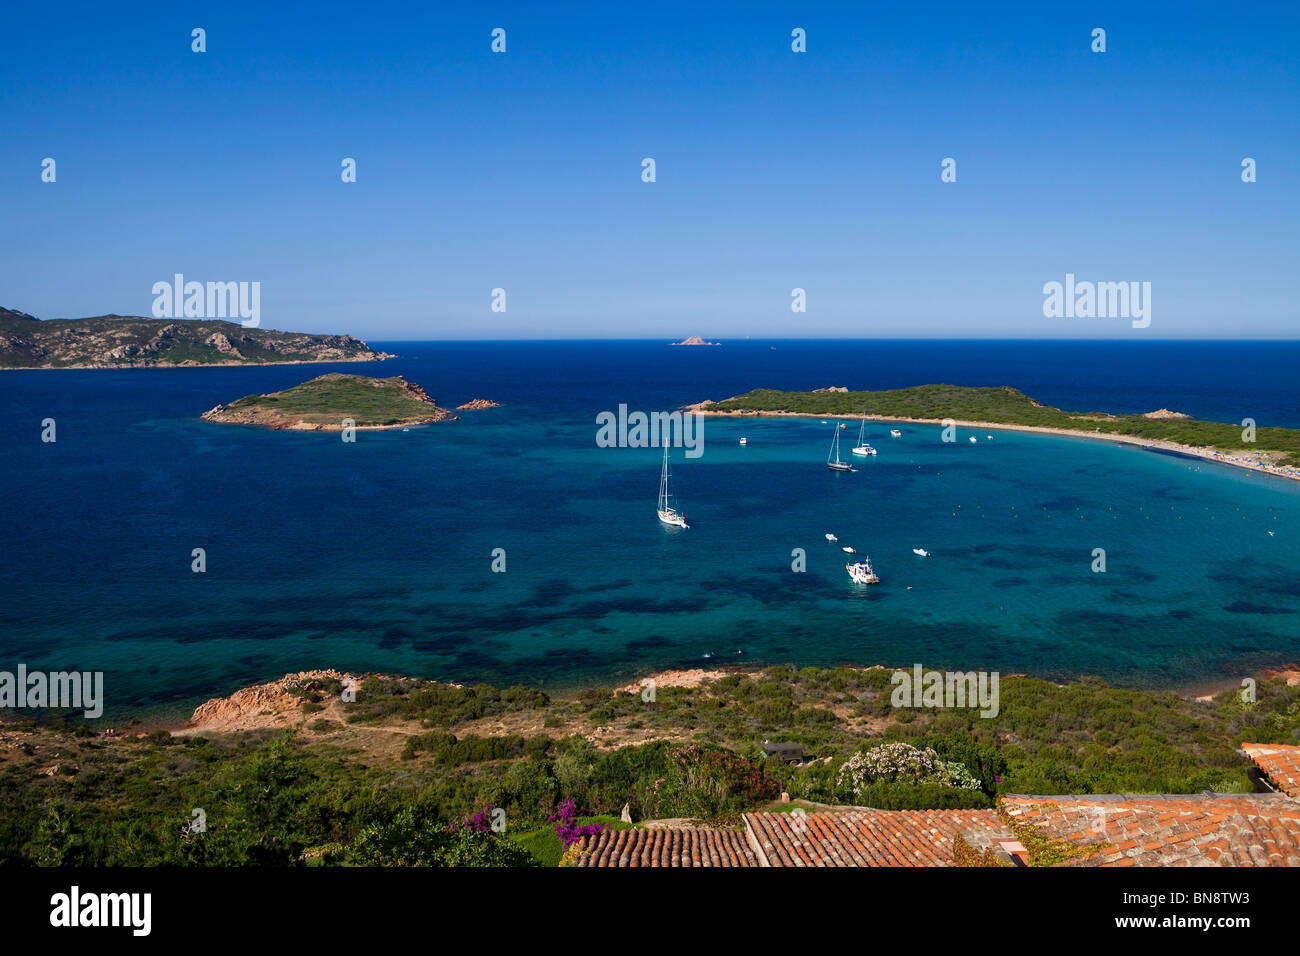 Sailing boats at Capo Coda Cavallo, Sardinia Stock Photo